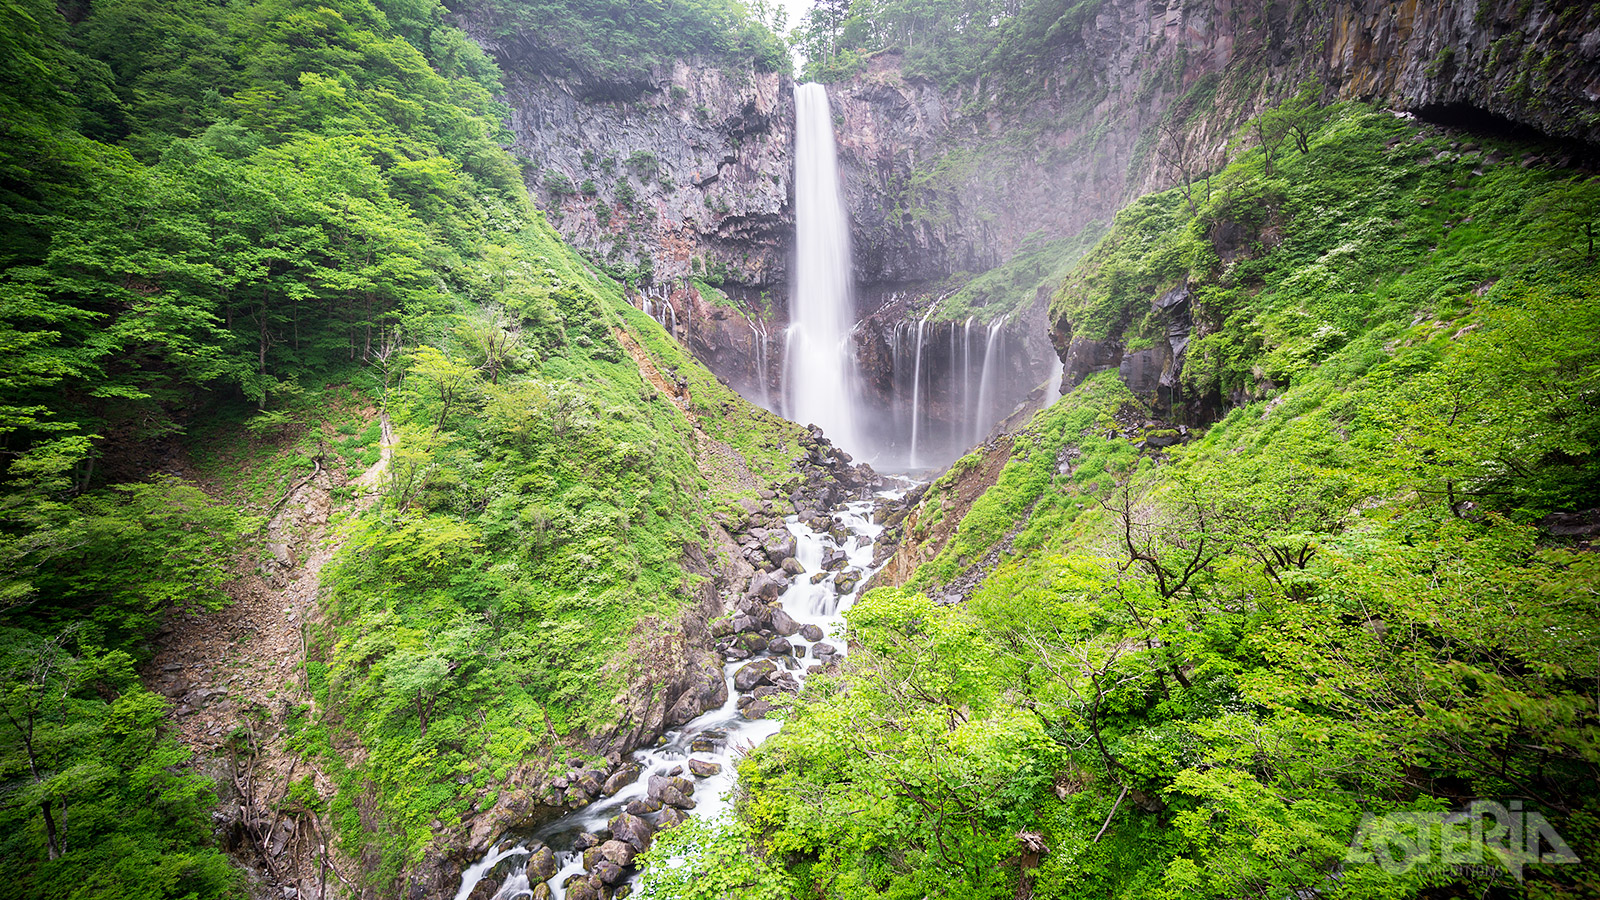 De Kegon waterval, gelegen aan het Chuzenjimeer, is met zijn 97m de derde hoogste waterval van Japan